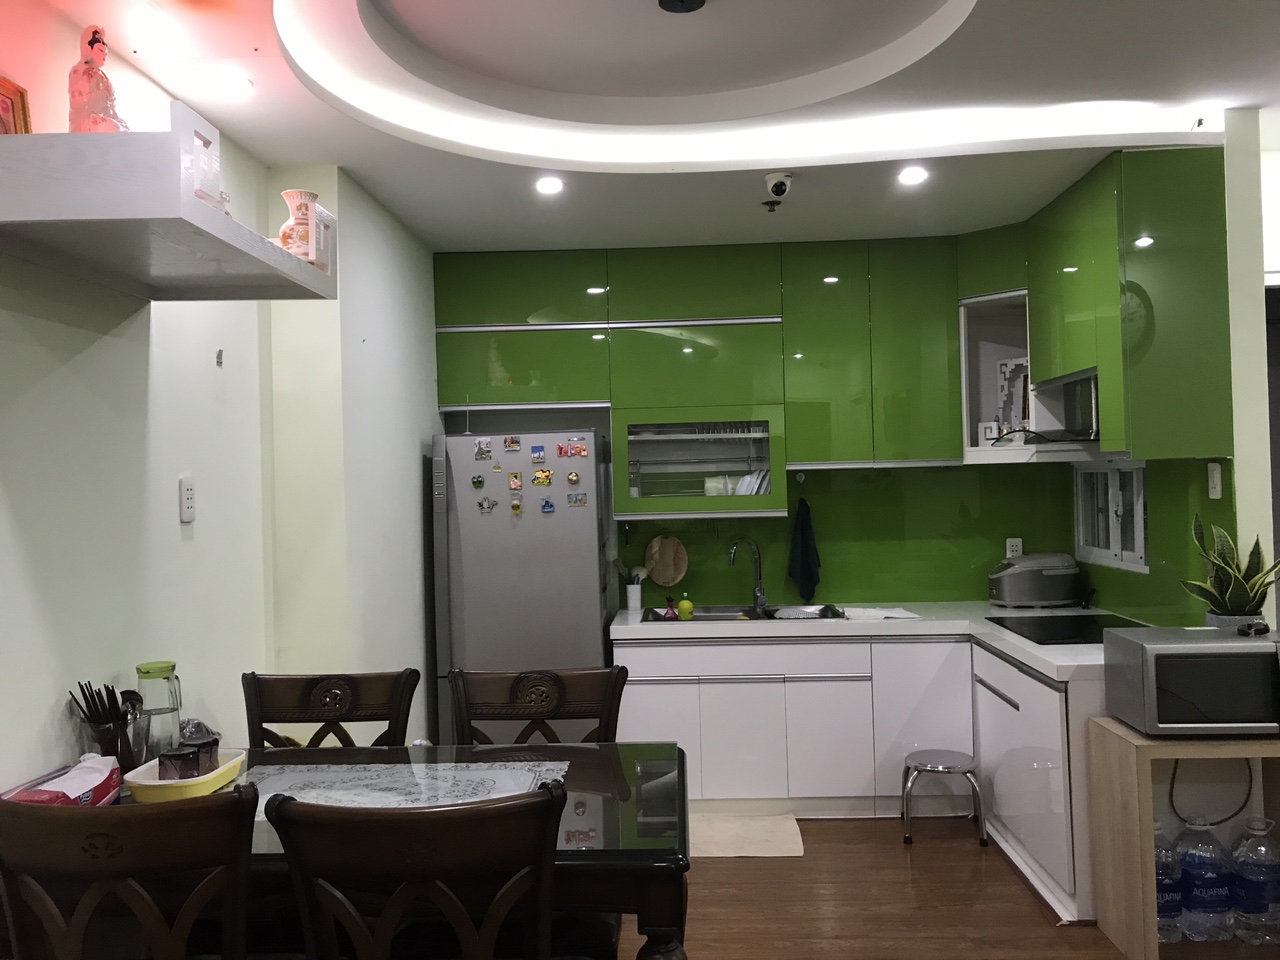 Cho thuê căn hộ 2PN đủ nội thất giá 12 tr/tháng tại chung cư The Harmona, Tân Bình - 0908879243 Tuấn